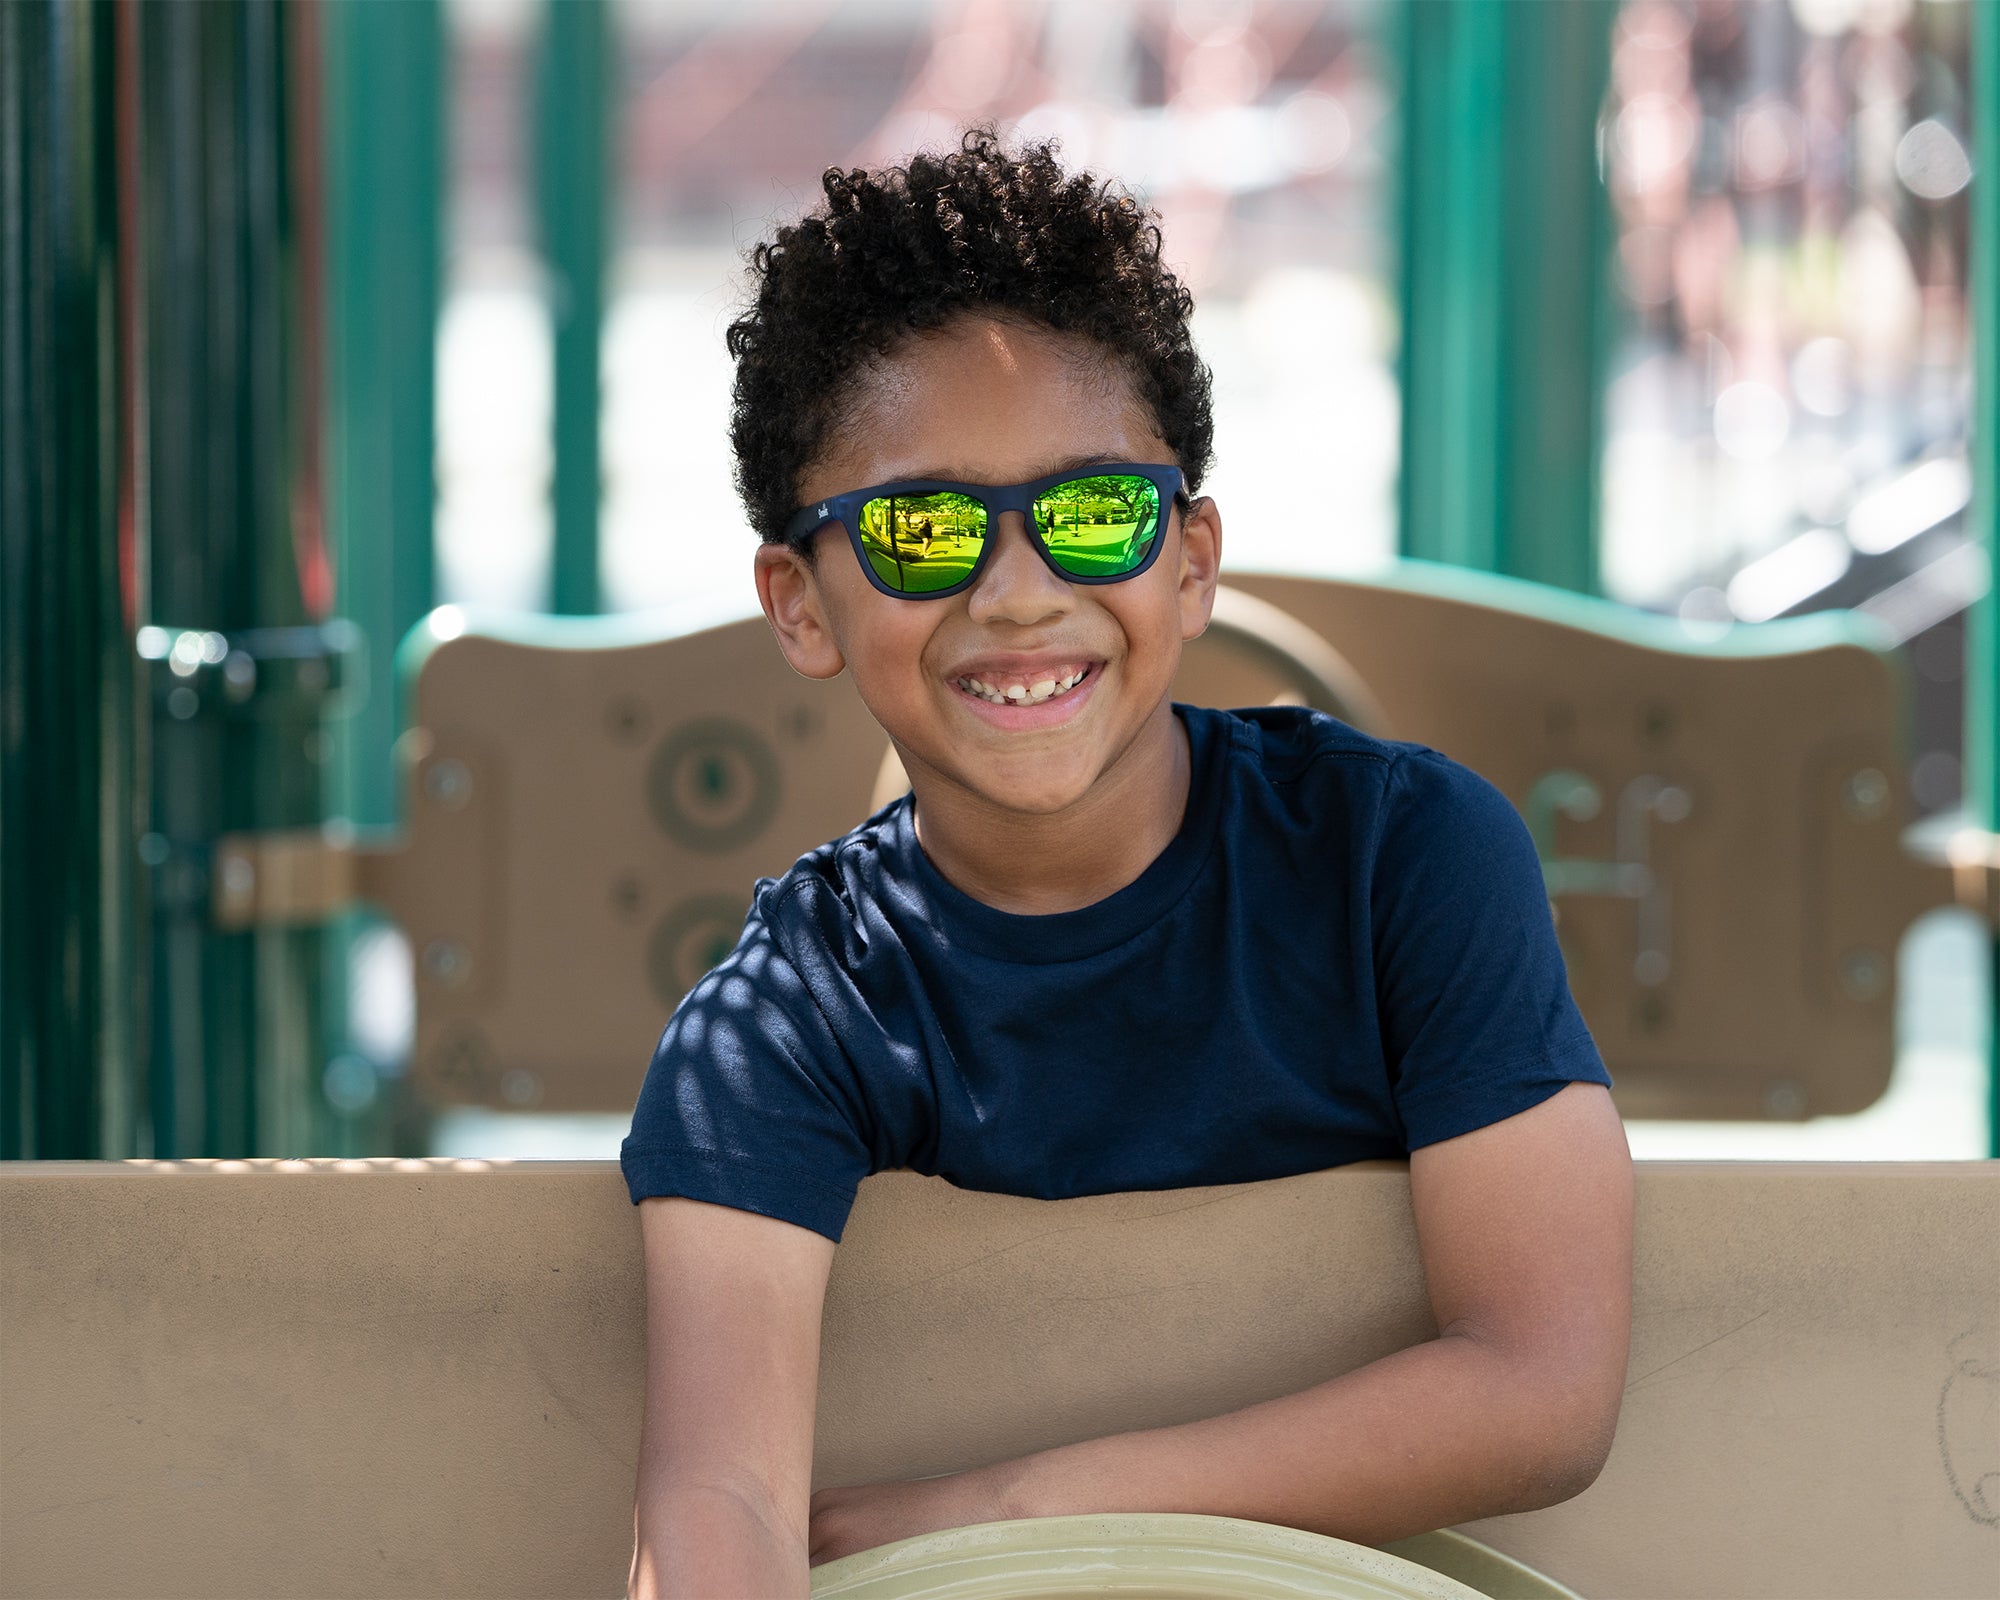 Suneez Flexible Children's Kids Polarized Sunglasses UV400